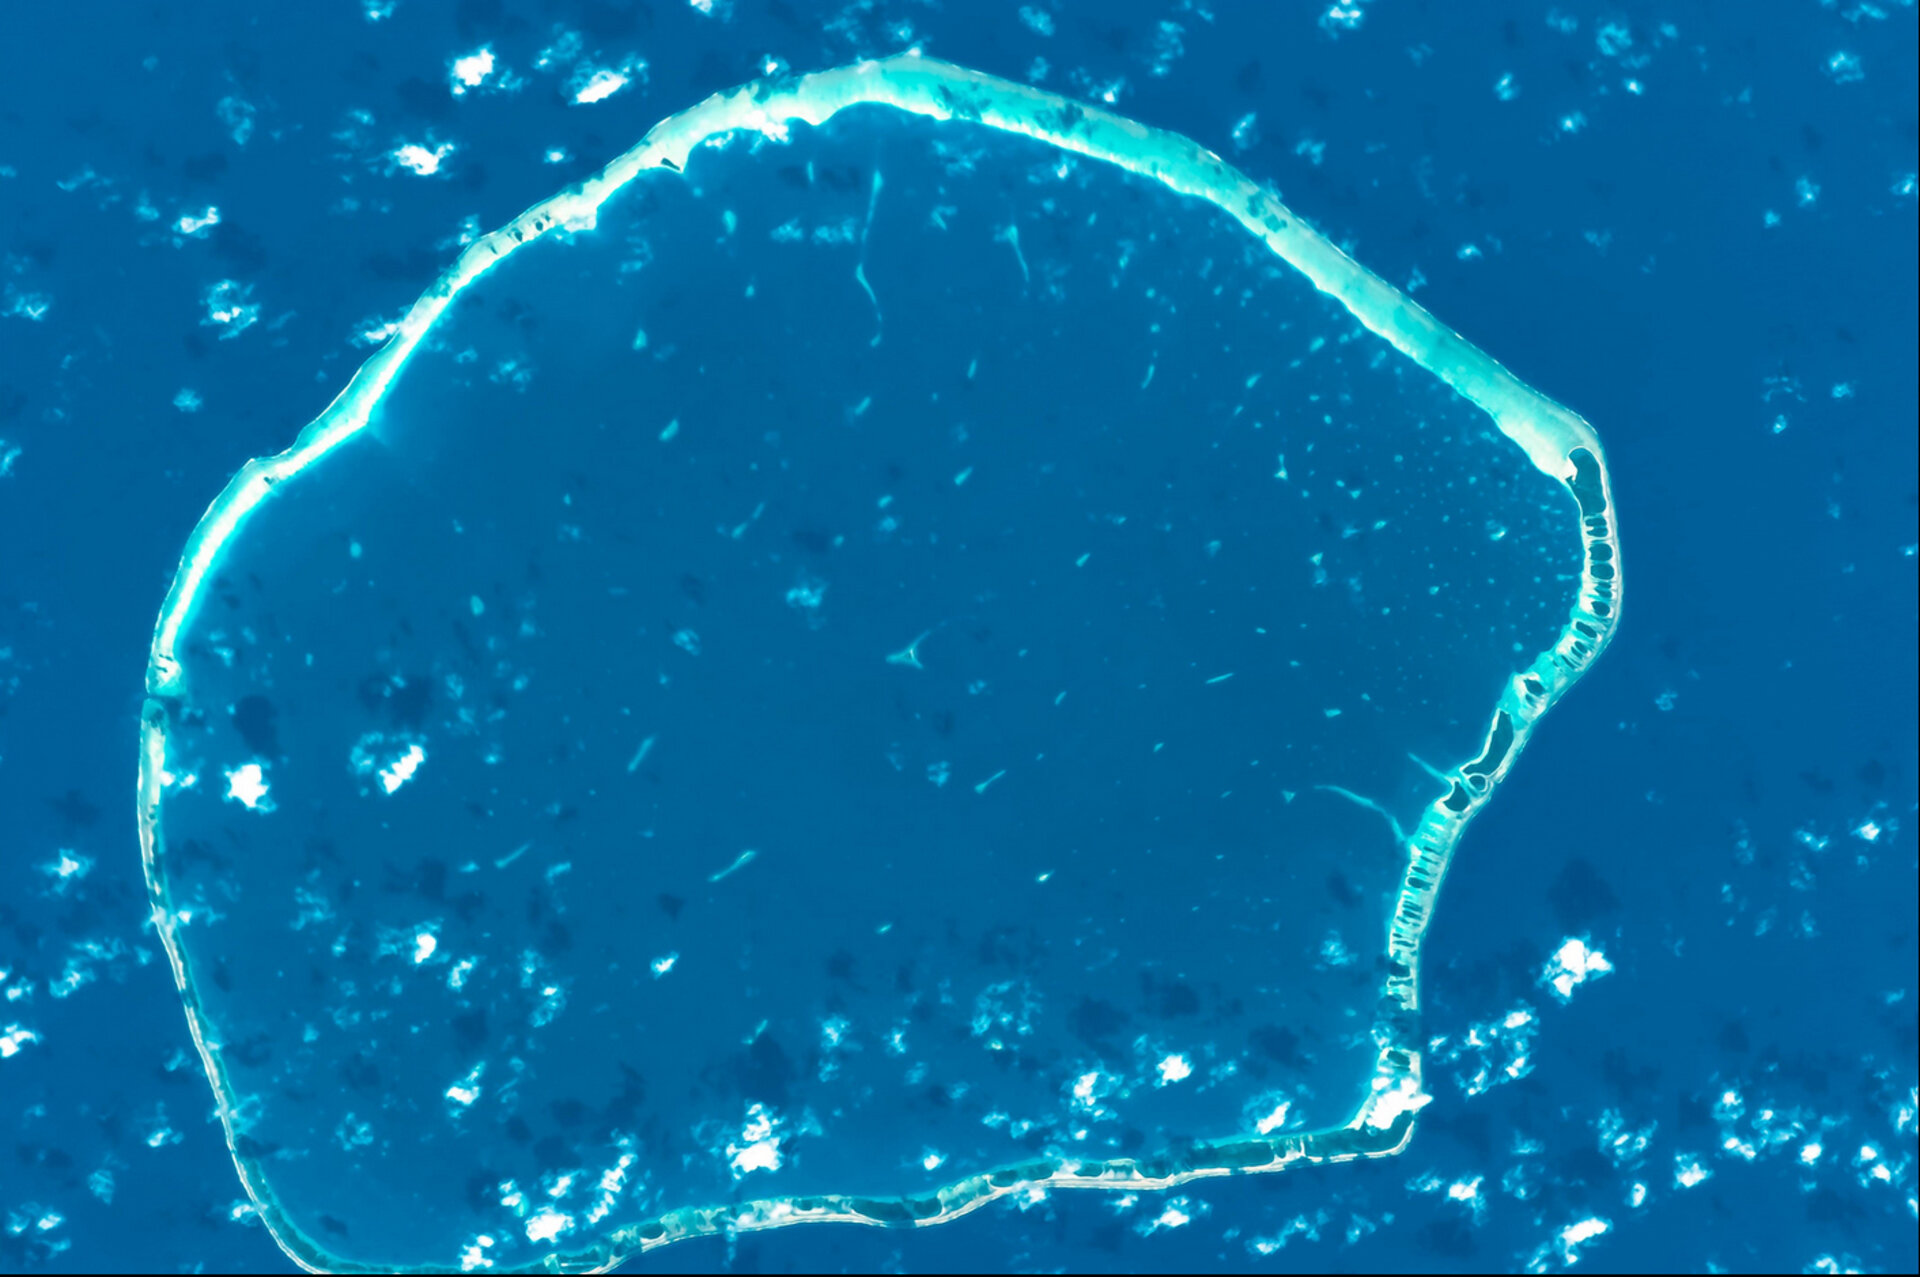 La Polynésie Française photographiée par Luca Parmitano, astronaute de l'ESA, depuis la Station spatiale internationale.